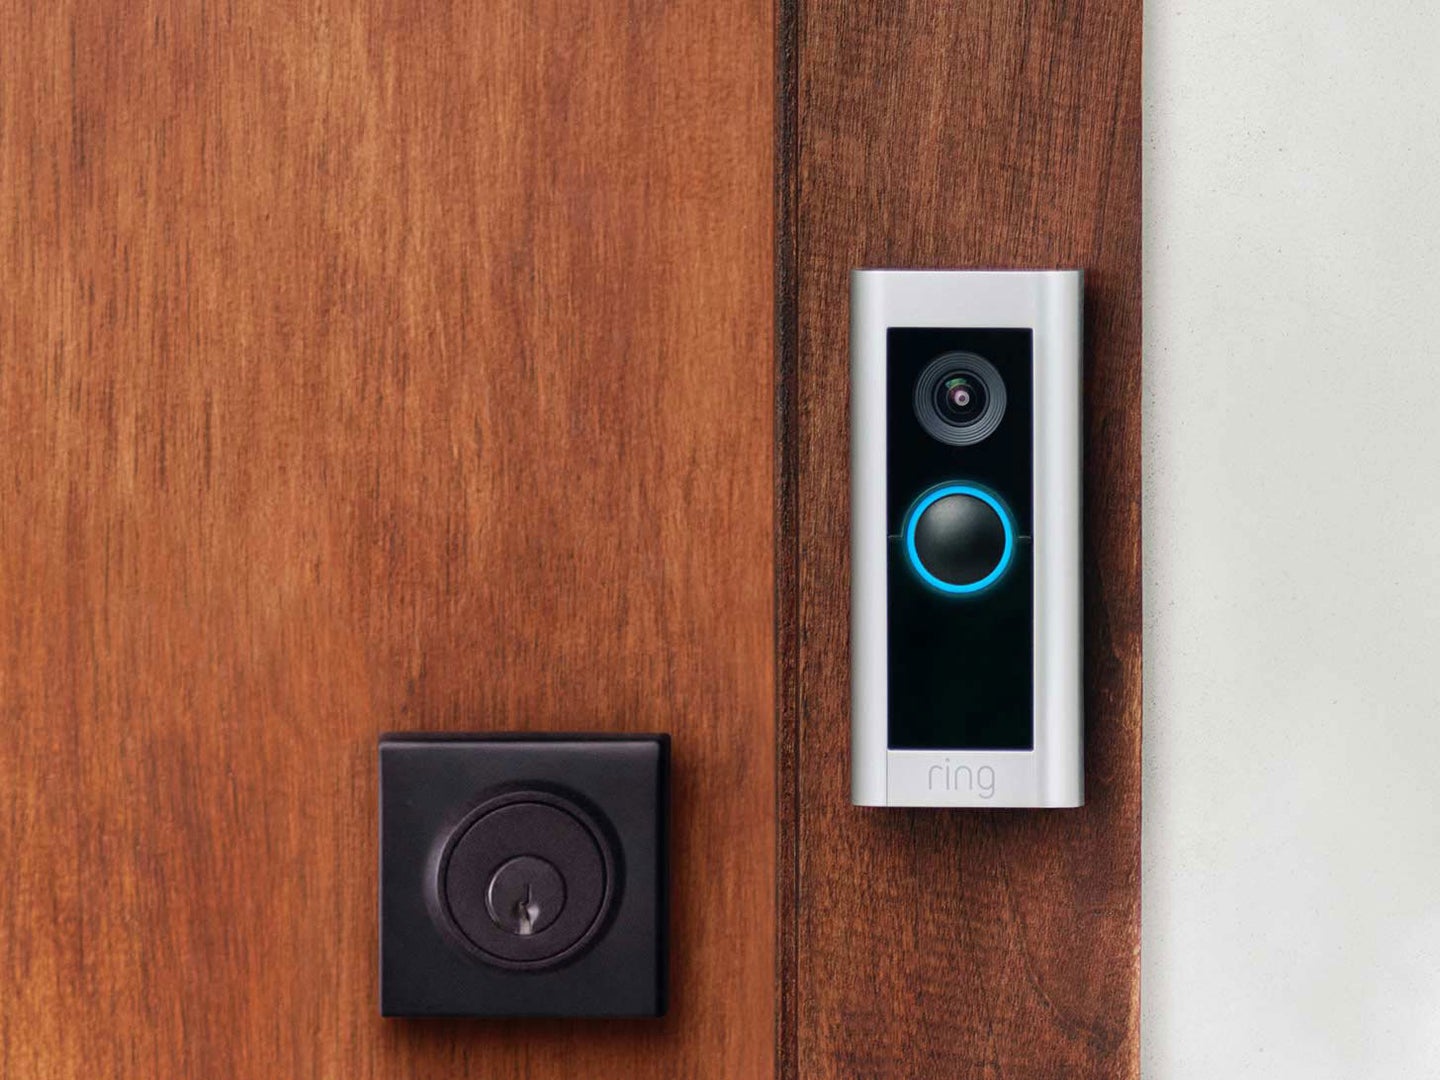 Ring Video Doorbell Pro 2 installed on a brown wooden door near a deadbolt lock.